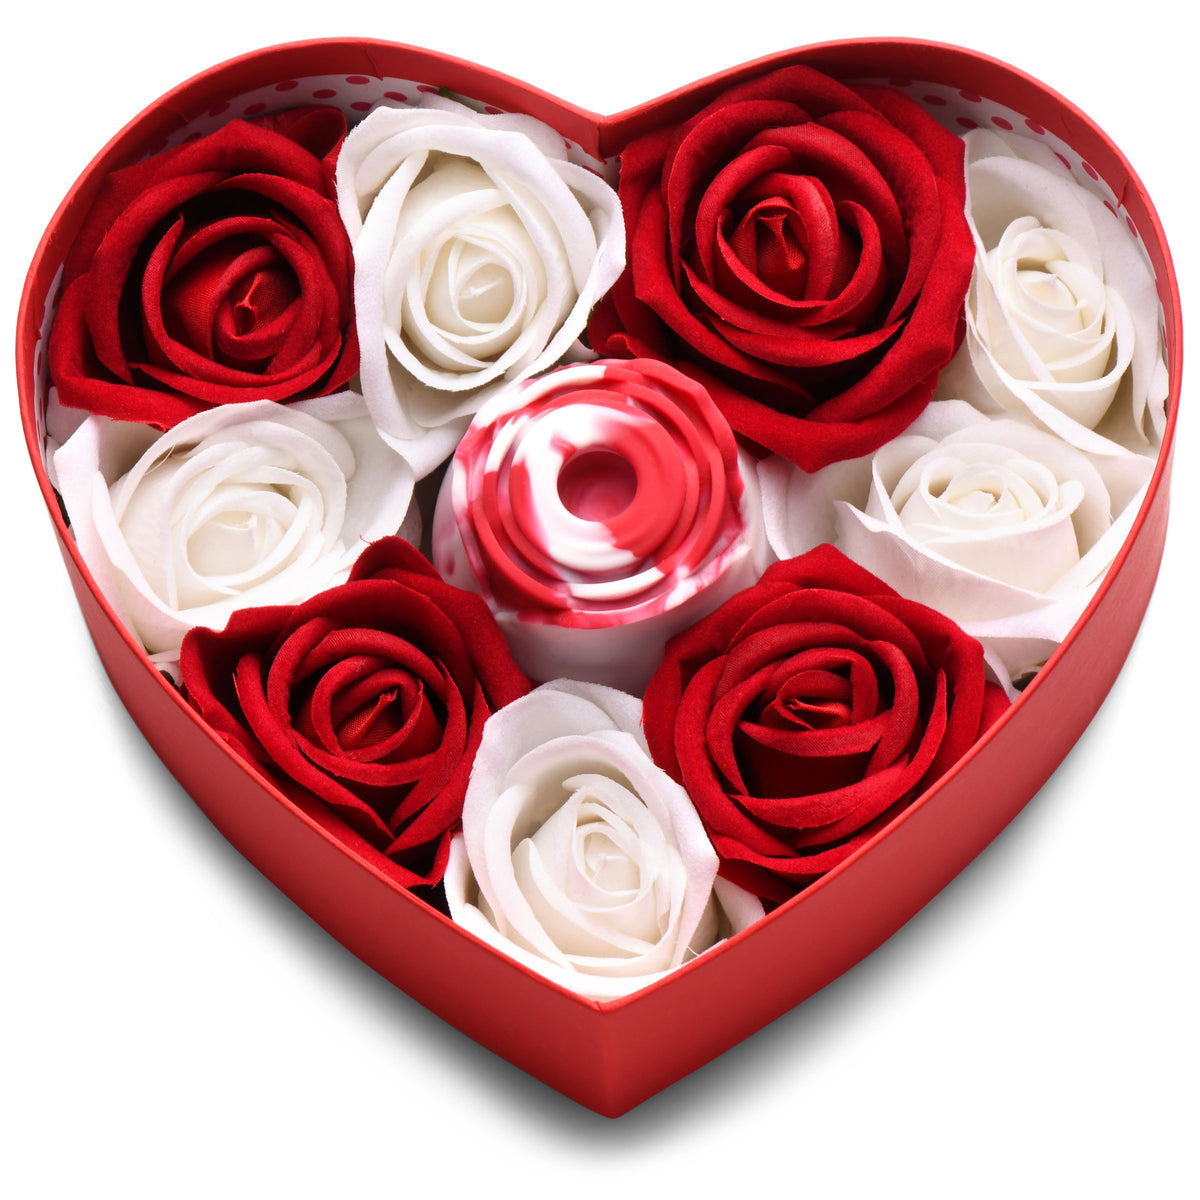 The Rose Lover's Gift Box - Swirl